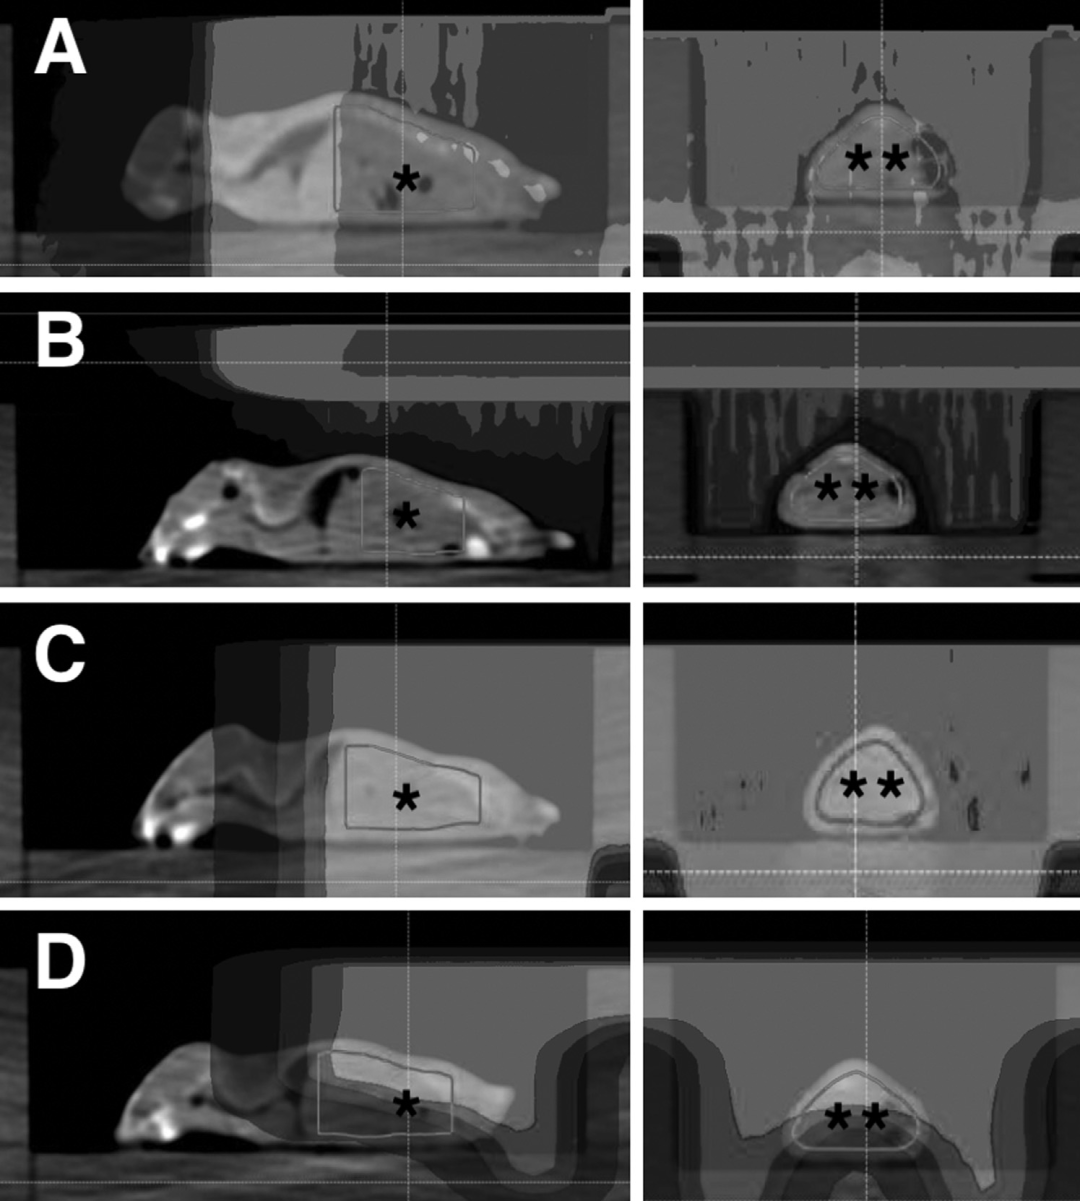 图3. (A)左图: 矢状位CT图像显示动物卵巢被均匀传输1.8 Gy剂量。右图: 冠状位。(B)左图: 矢状位CT图像显示显示动物卵巢未受到超出SOBP的照射。右图: 冠状位。(C)左: 矢状位CT图像显示动物卵巢被均匀传输0.2 Gy剂量。右图: 冠状位。(D)左: 矢状位CT图像显示动物卵巢接受到小于0.2 Gy给的剂量并在SOBP远端剂量迅速下跌。右图: 冠状位。图中*表示卵巢的大致位置。